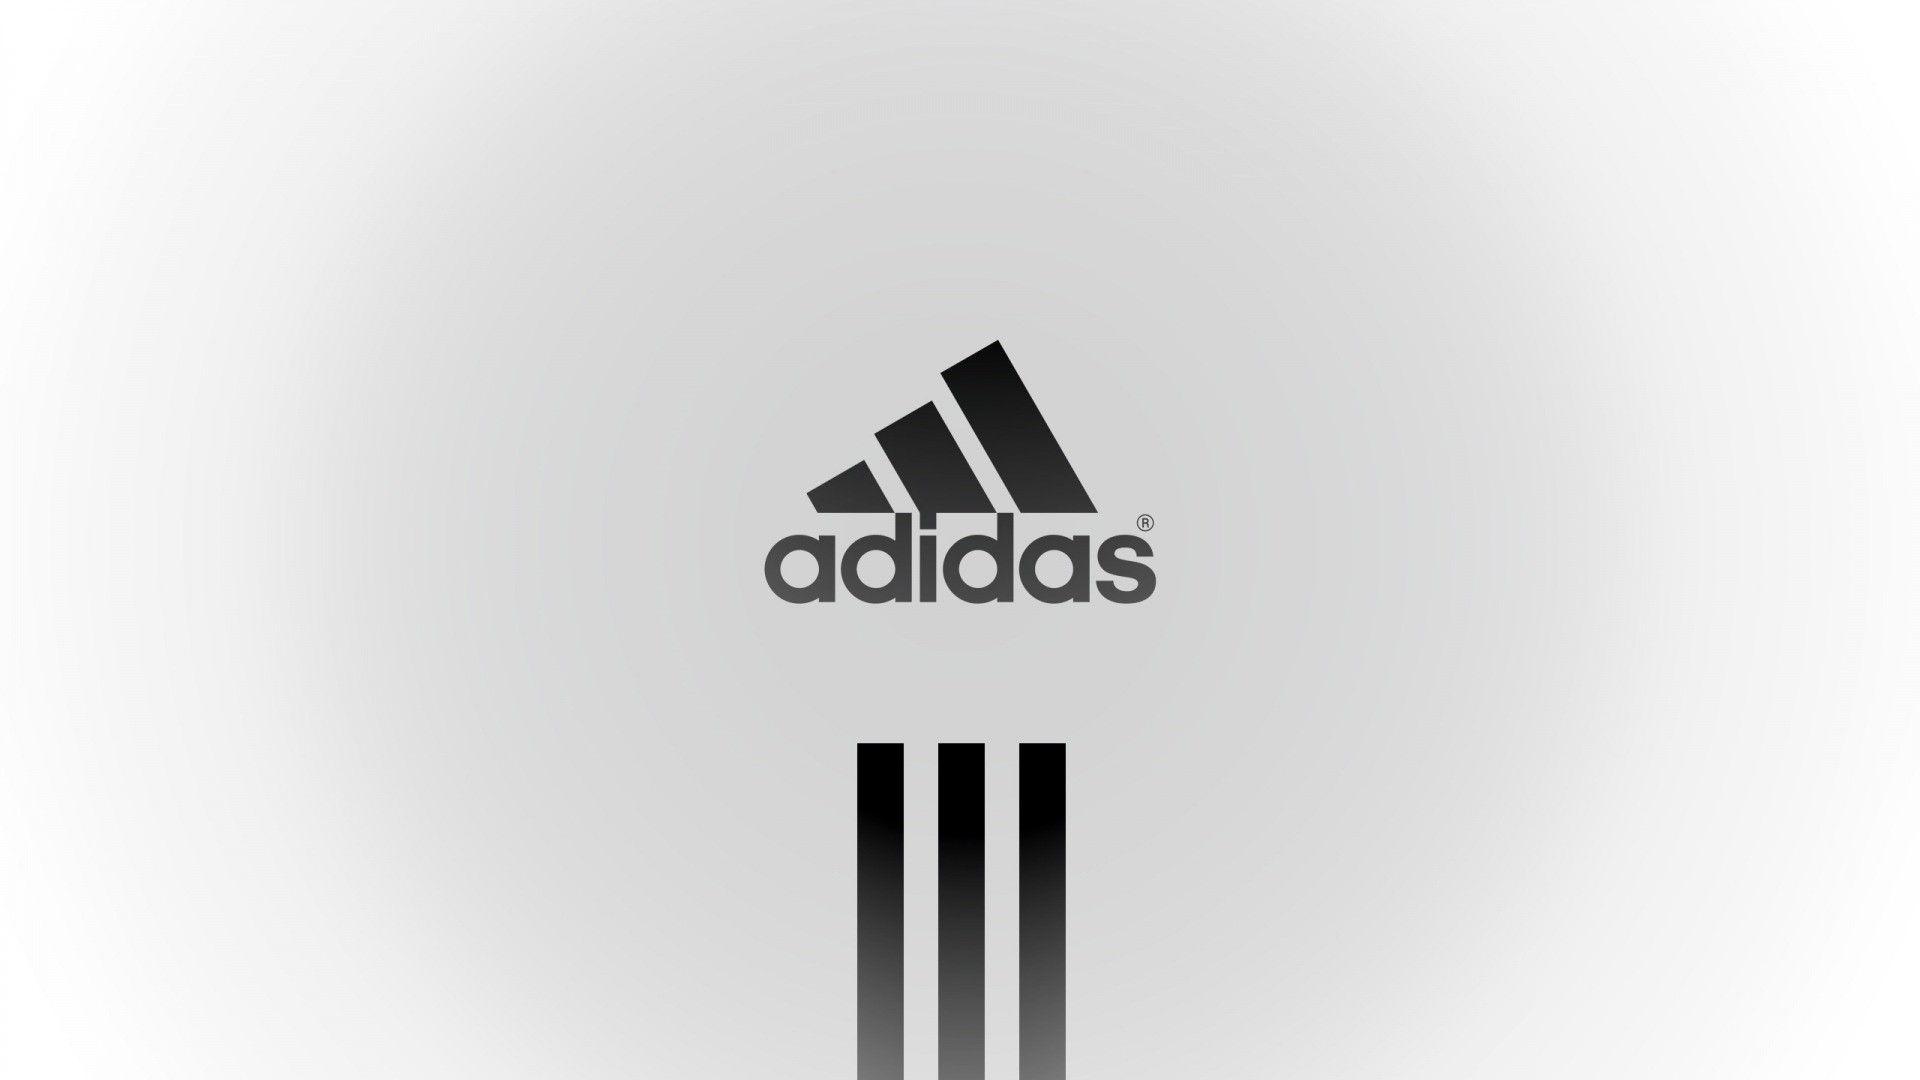 Logos For > Adidas Logo Wallpaper 2012